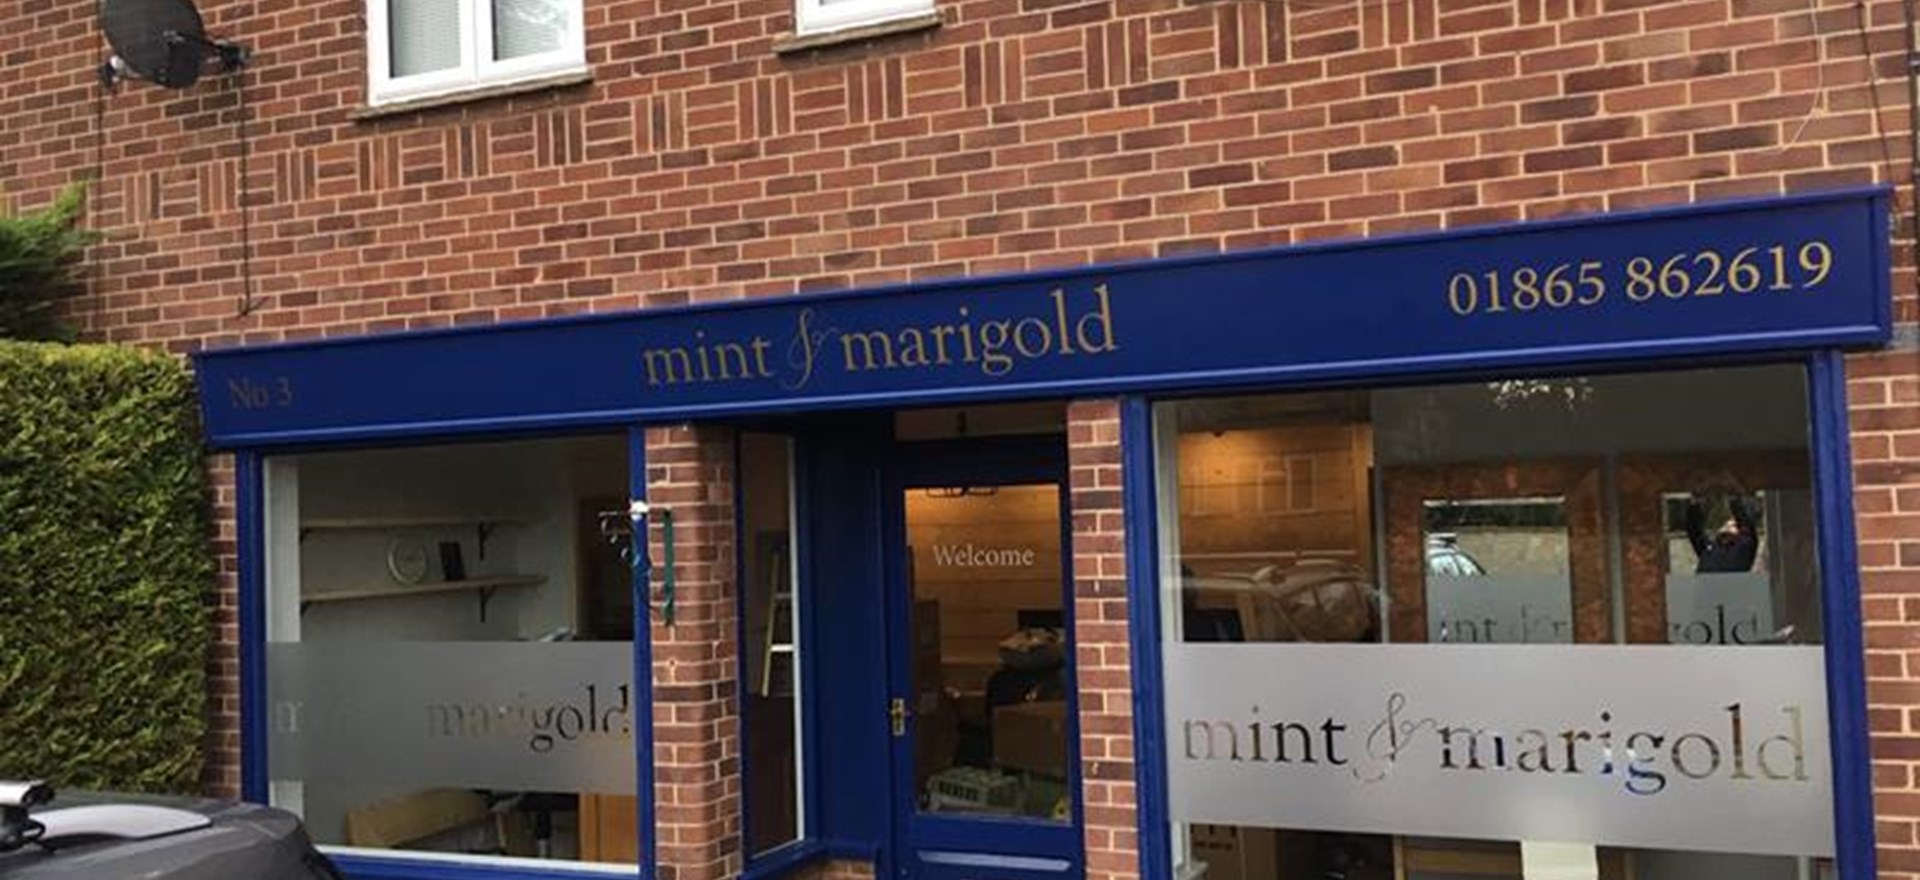 Mint Marigold Exterior Fascia Signage Oxford